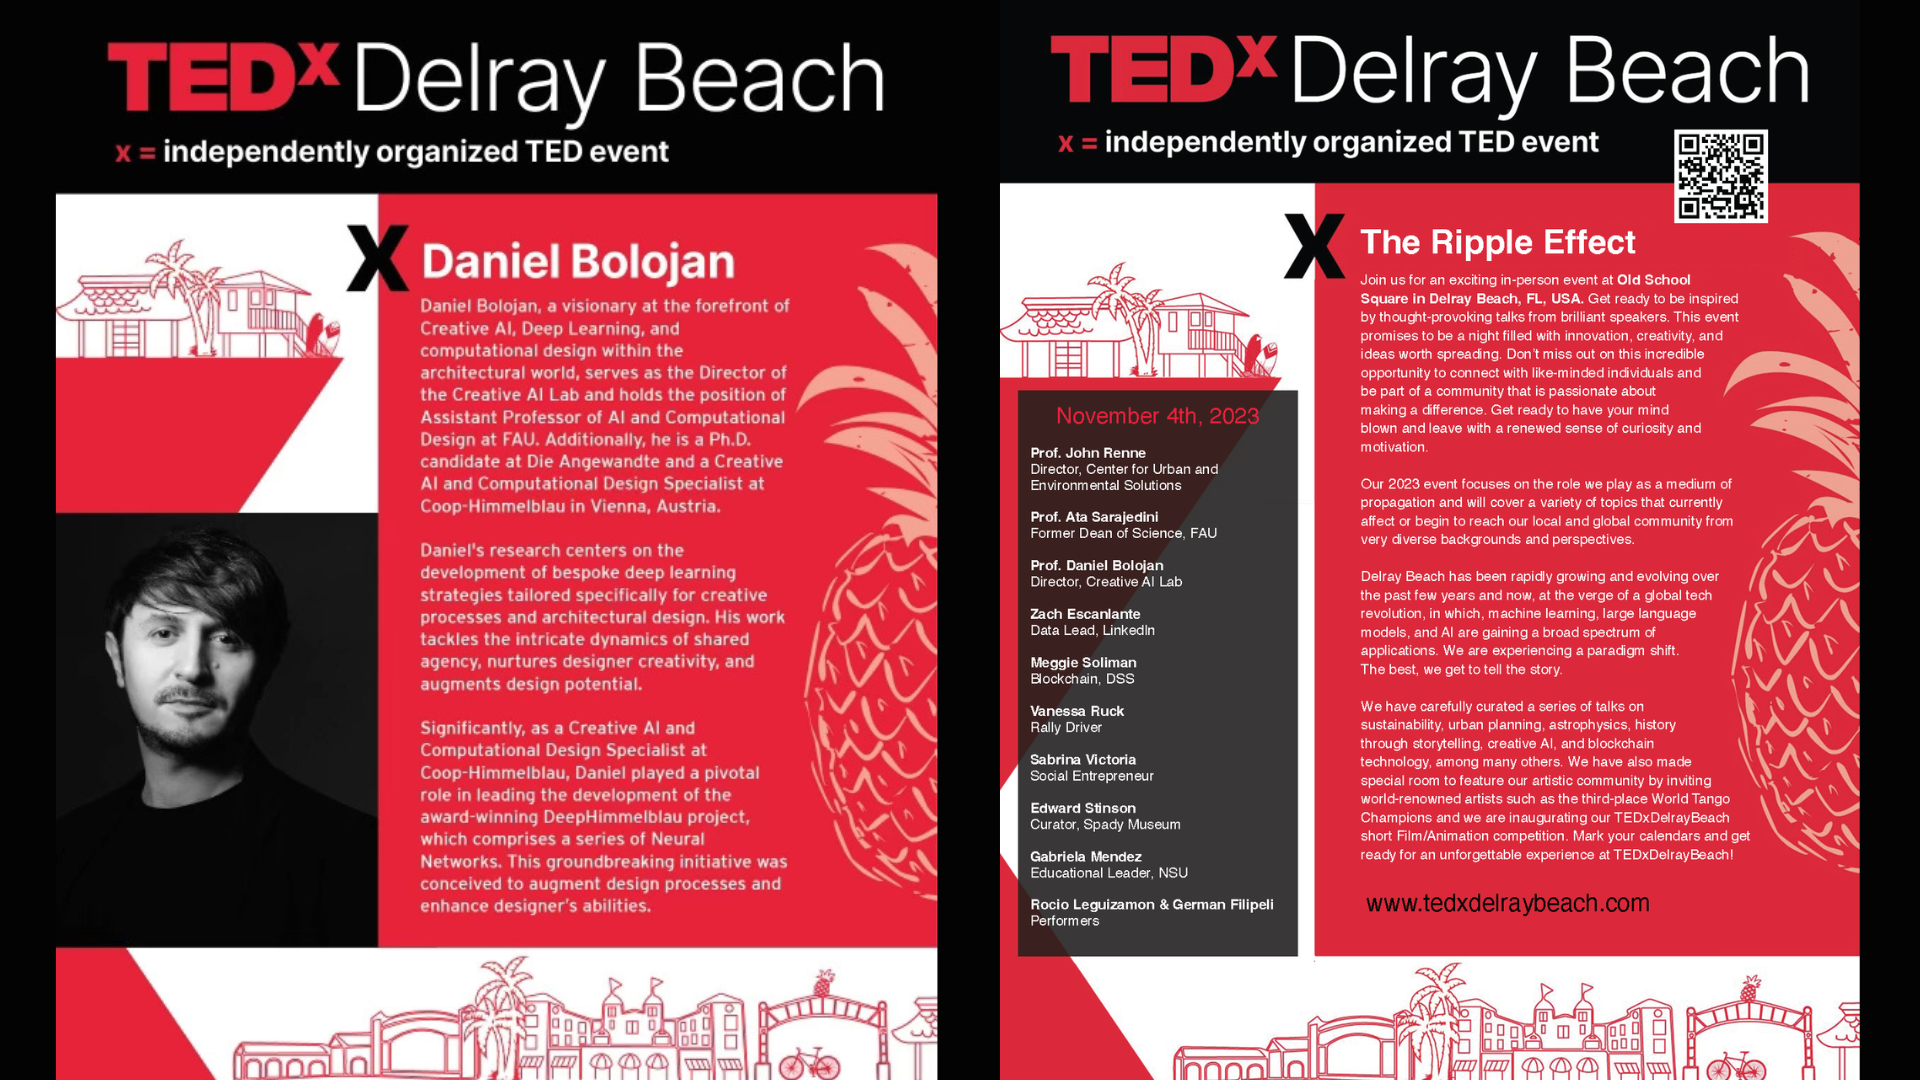 ASSISTANT PROFESSOR, DANIEL BOLOJAN WILL DELIVER A TALK ON CREATIVE AI AT TEDX DELRAY BEACH